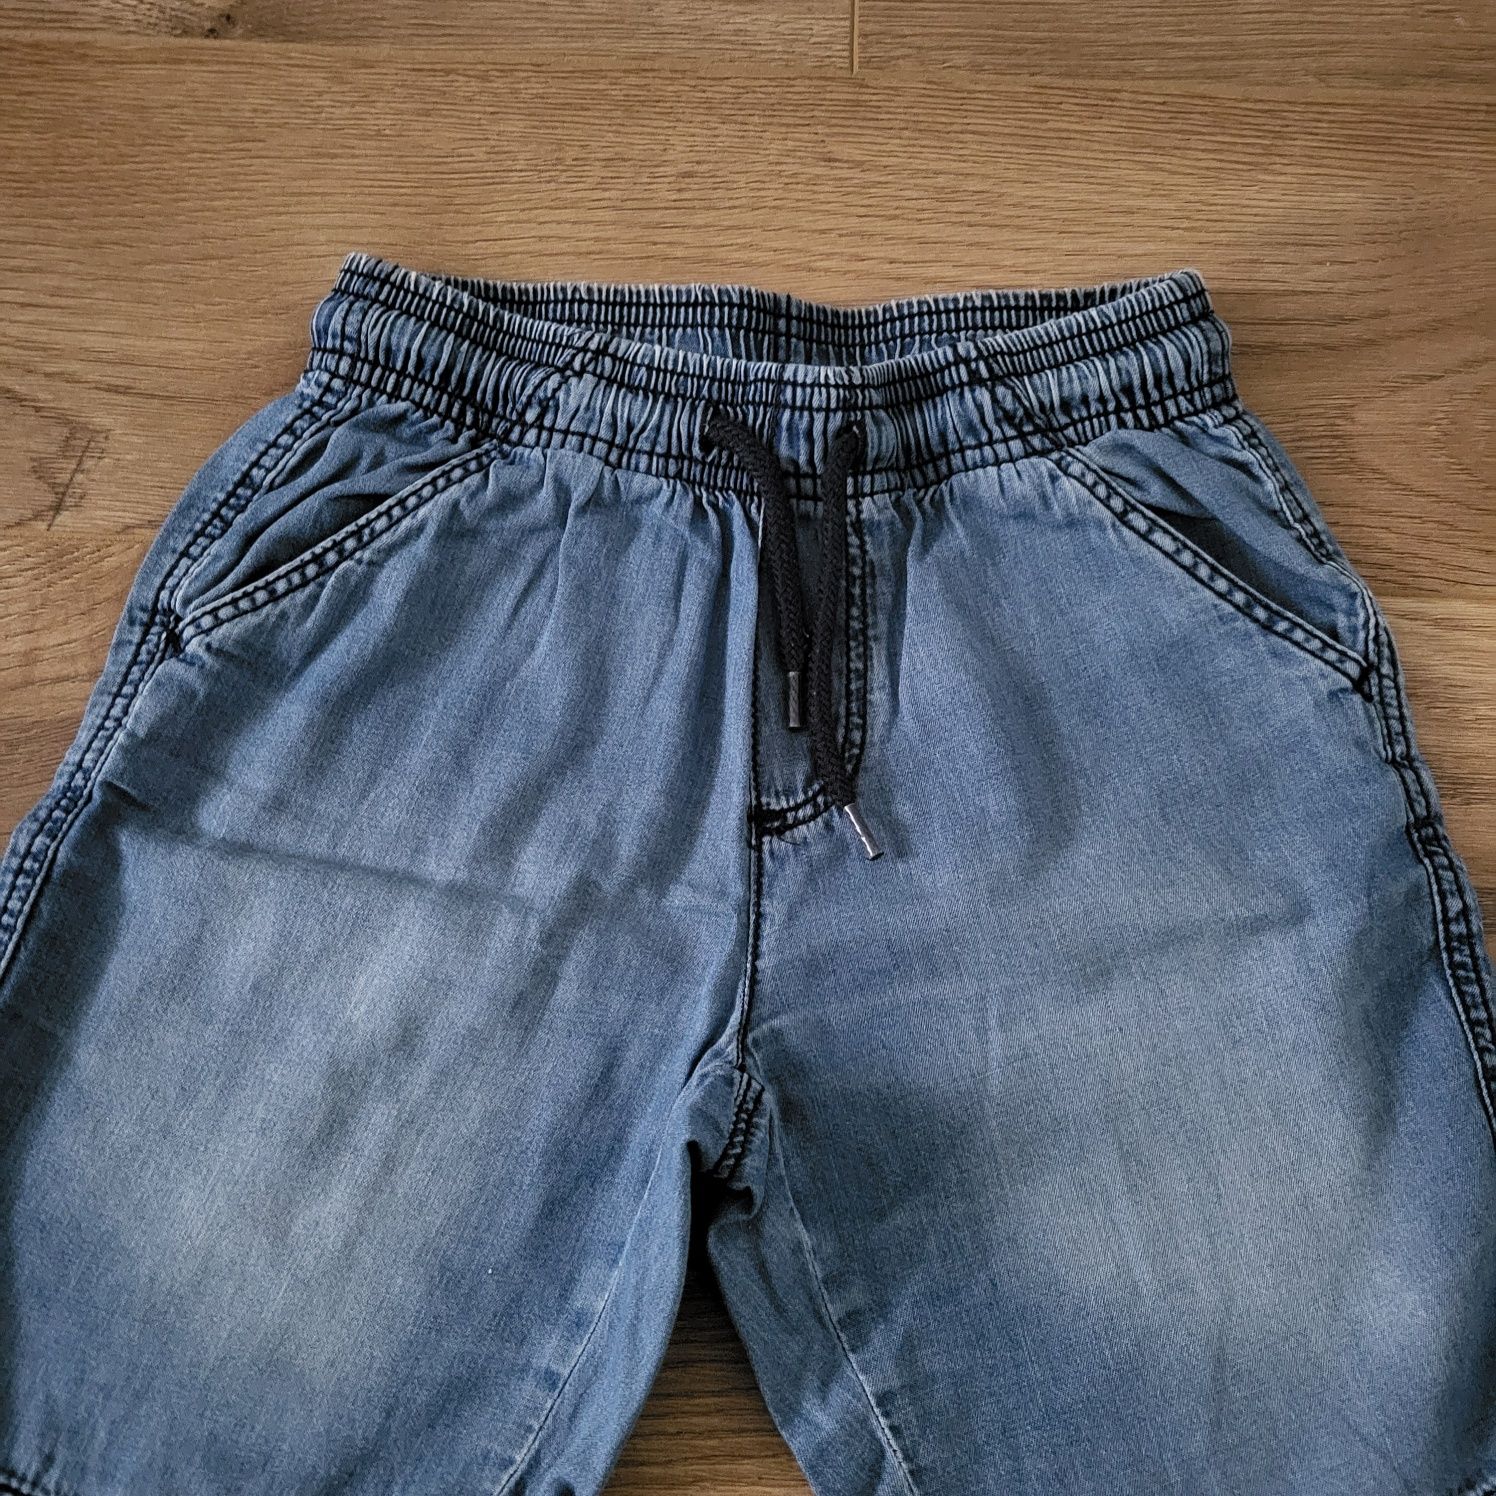 Spodenki krótkie chłopięce r.110/116 Lupilu, materiał cienki jeans